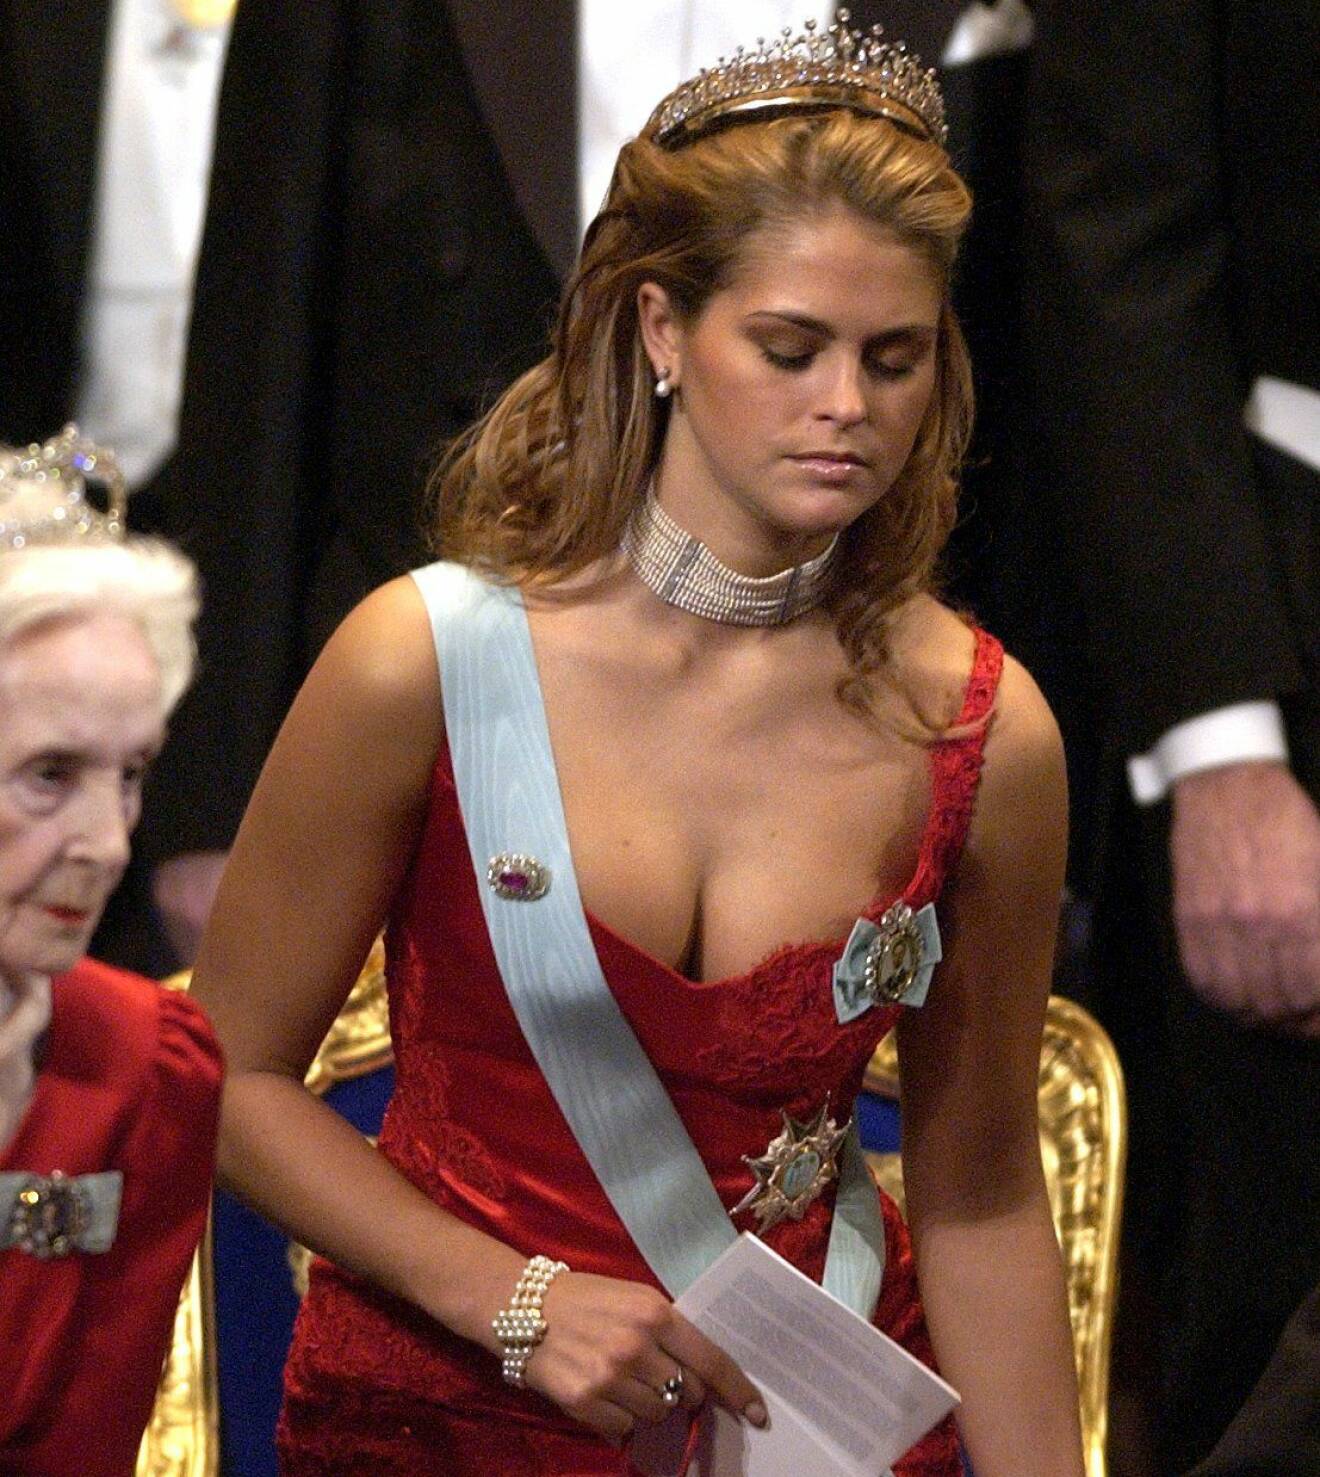 Prinsessan Madeleine på Nobelfest i röd klänning